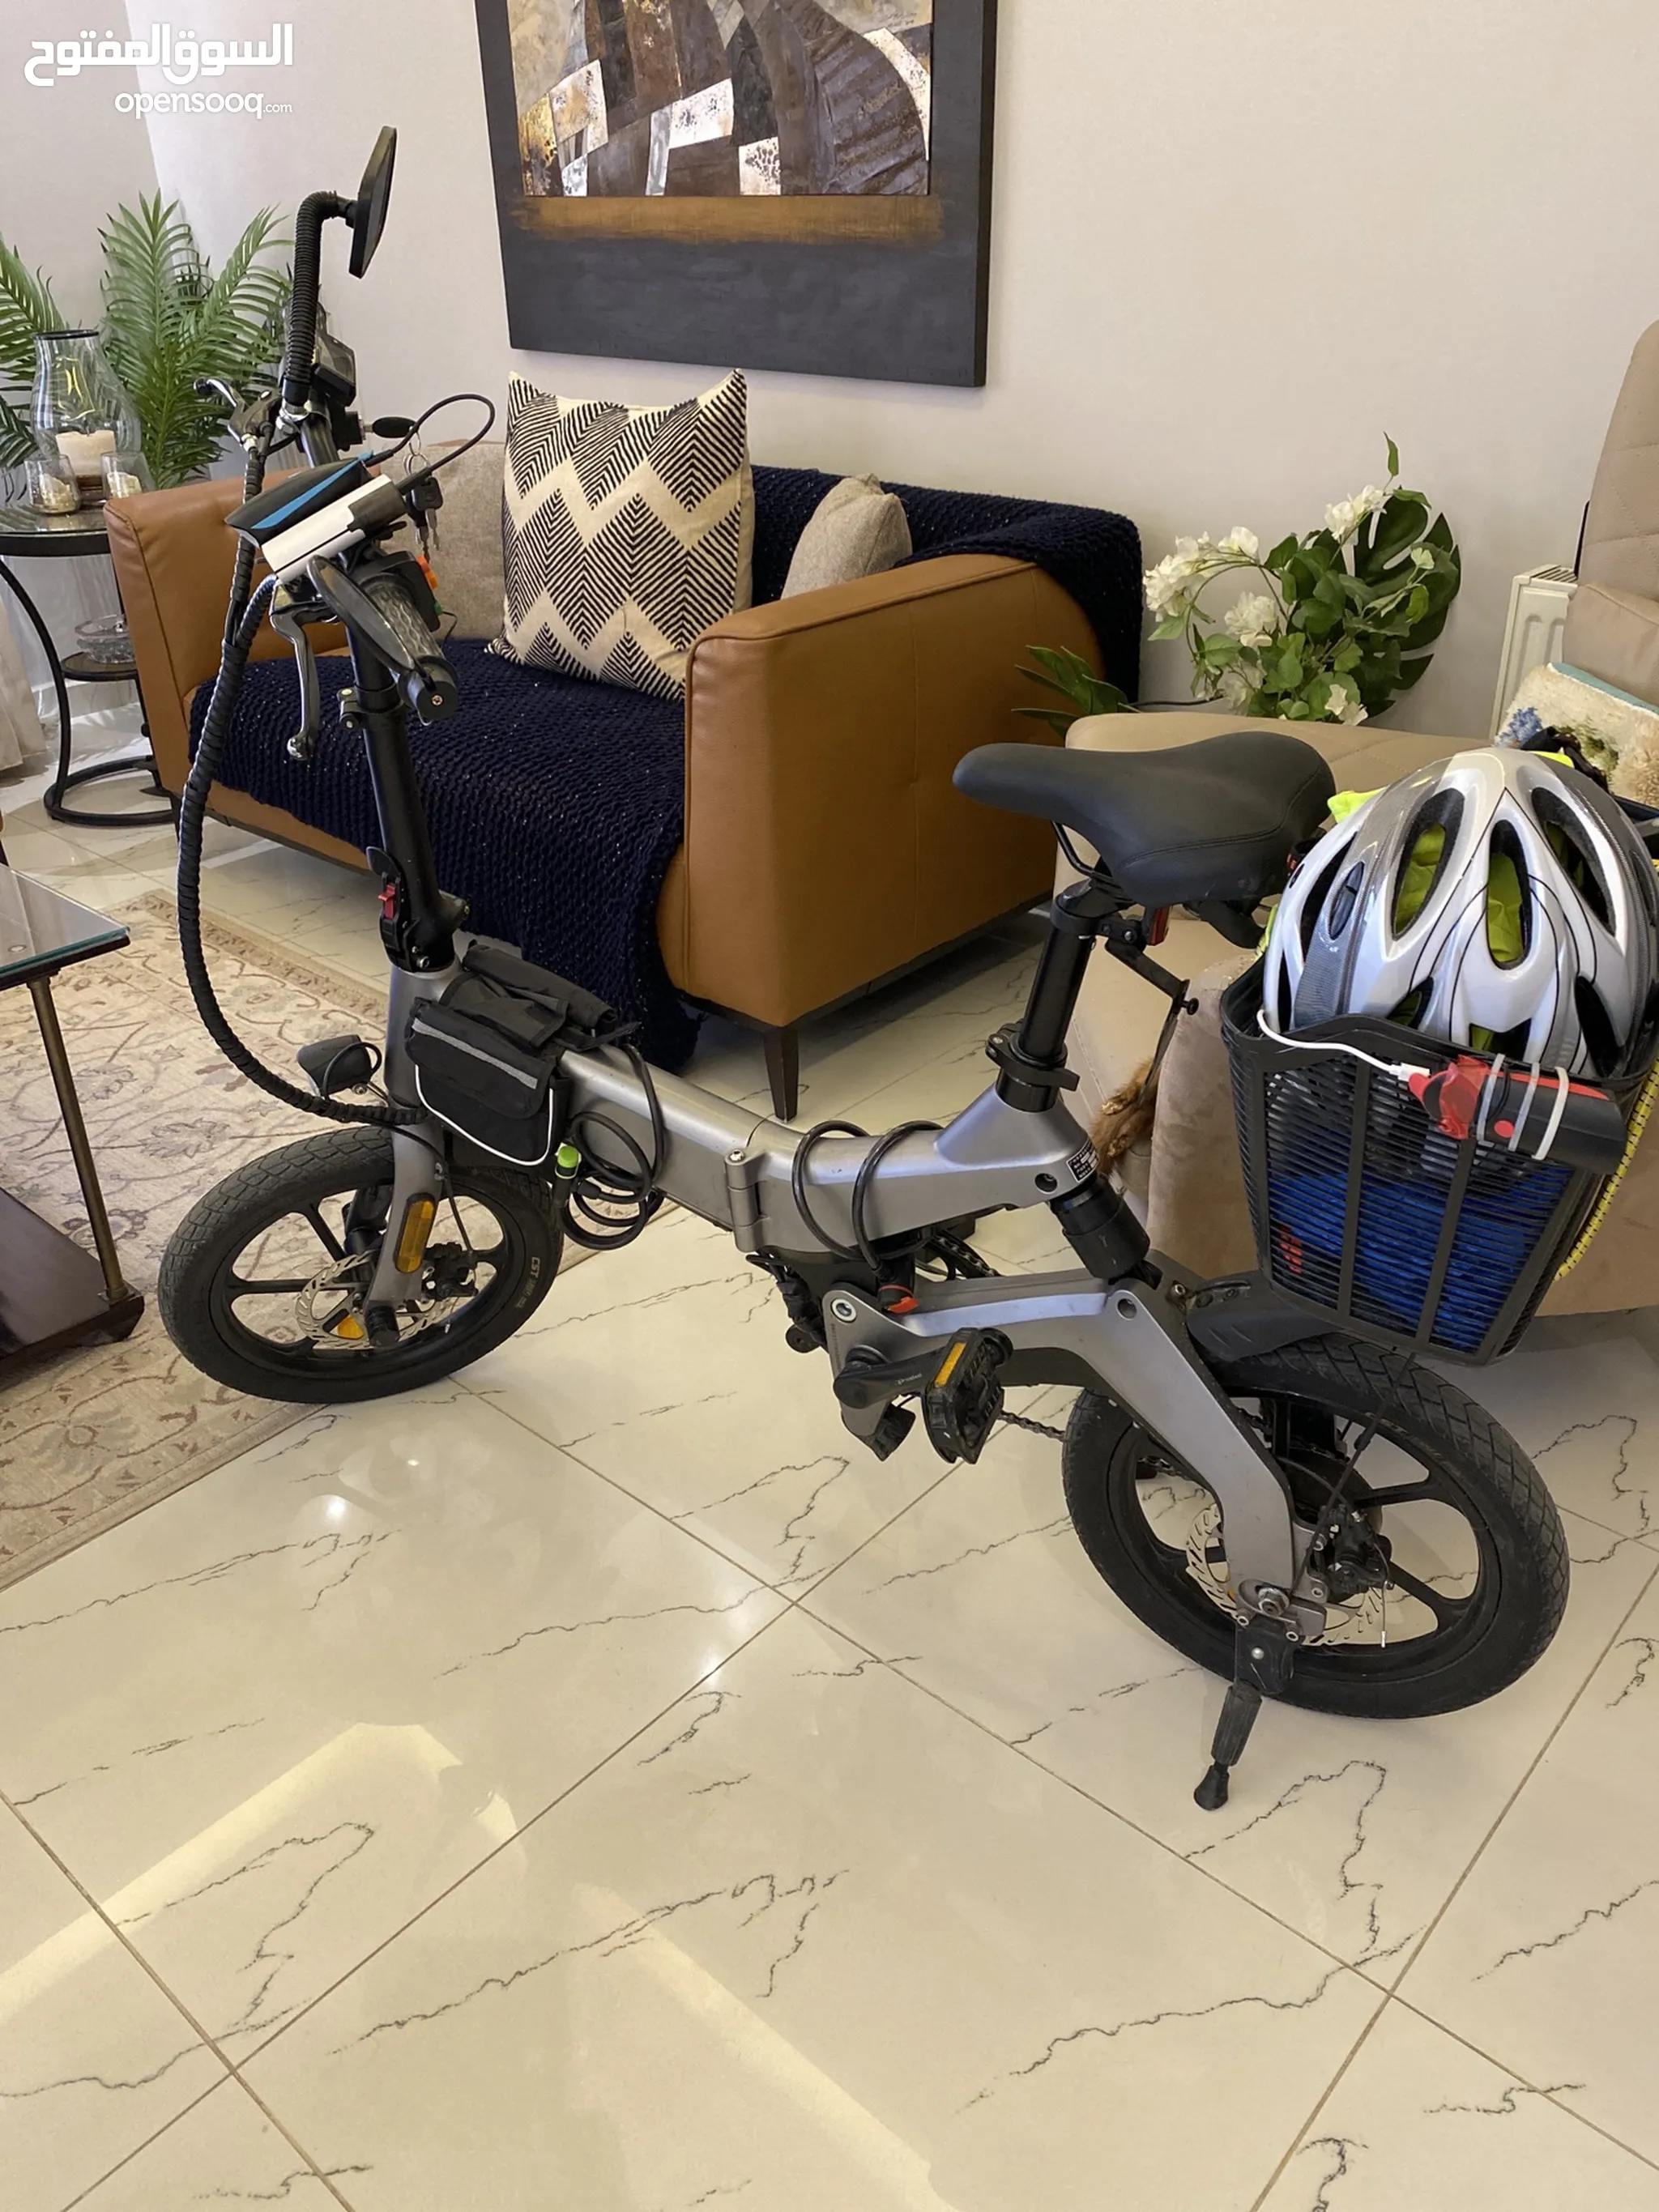 دراجات هوائية للبيع : دراجات على الطرق : جبلية : للأطفال : قطع غيار  واكسسوار : ارخص الاسعار في الأردن | السوق المفتوح